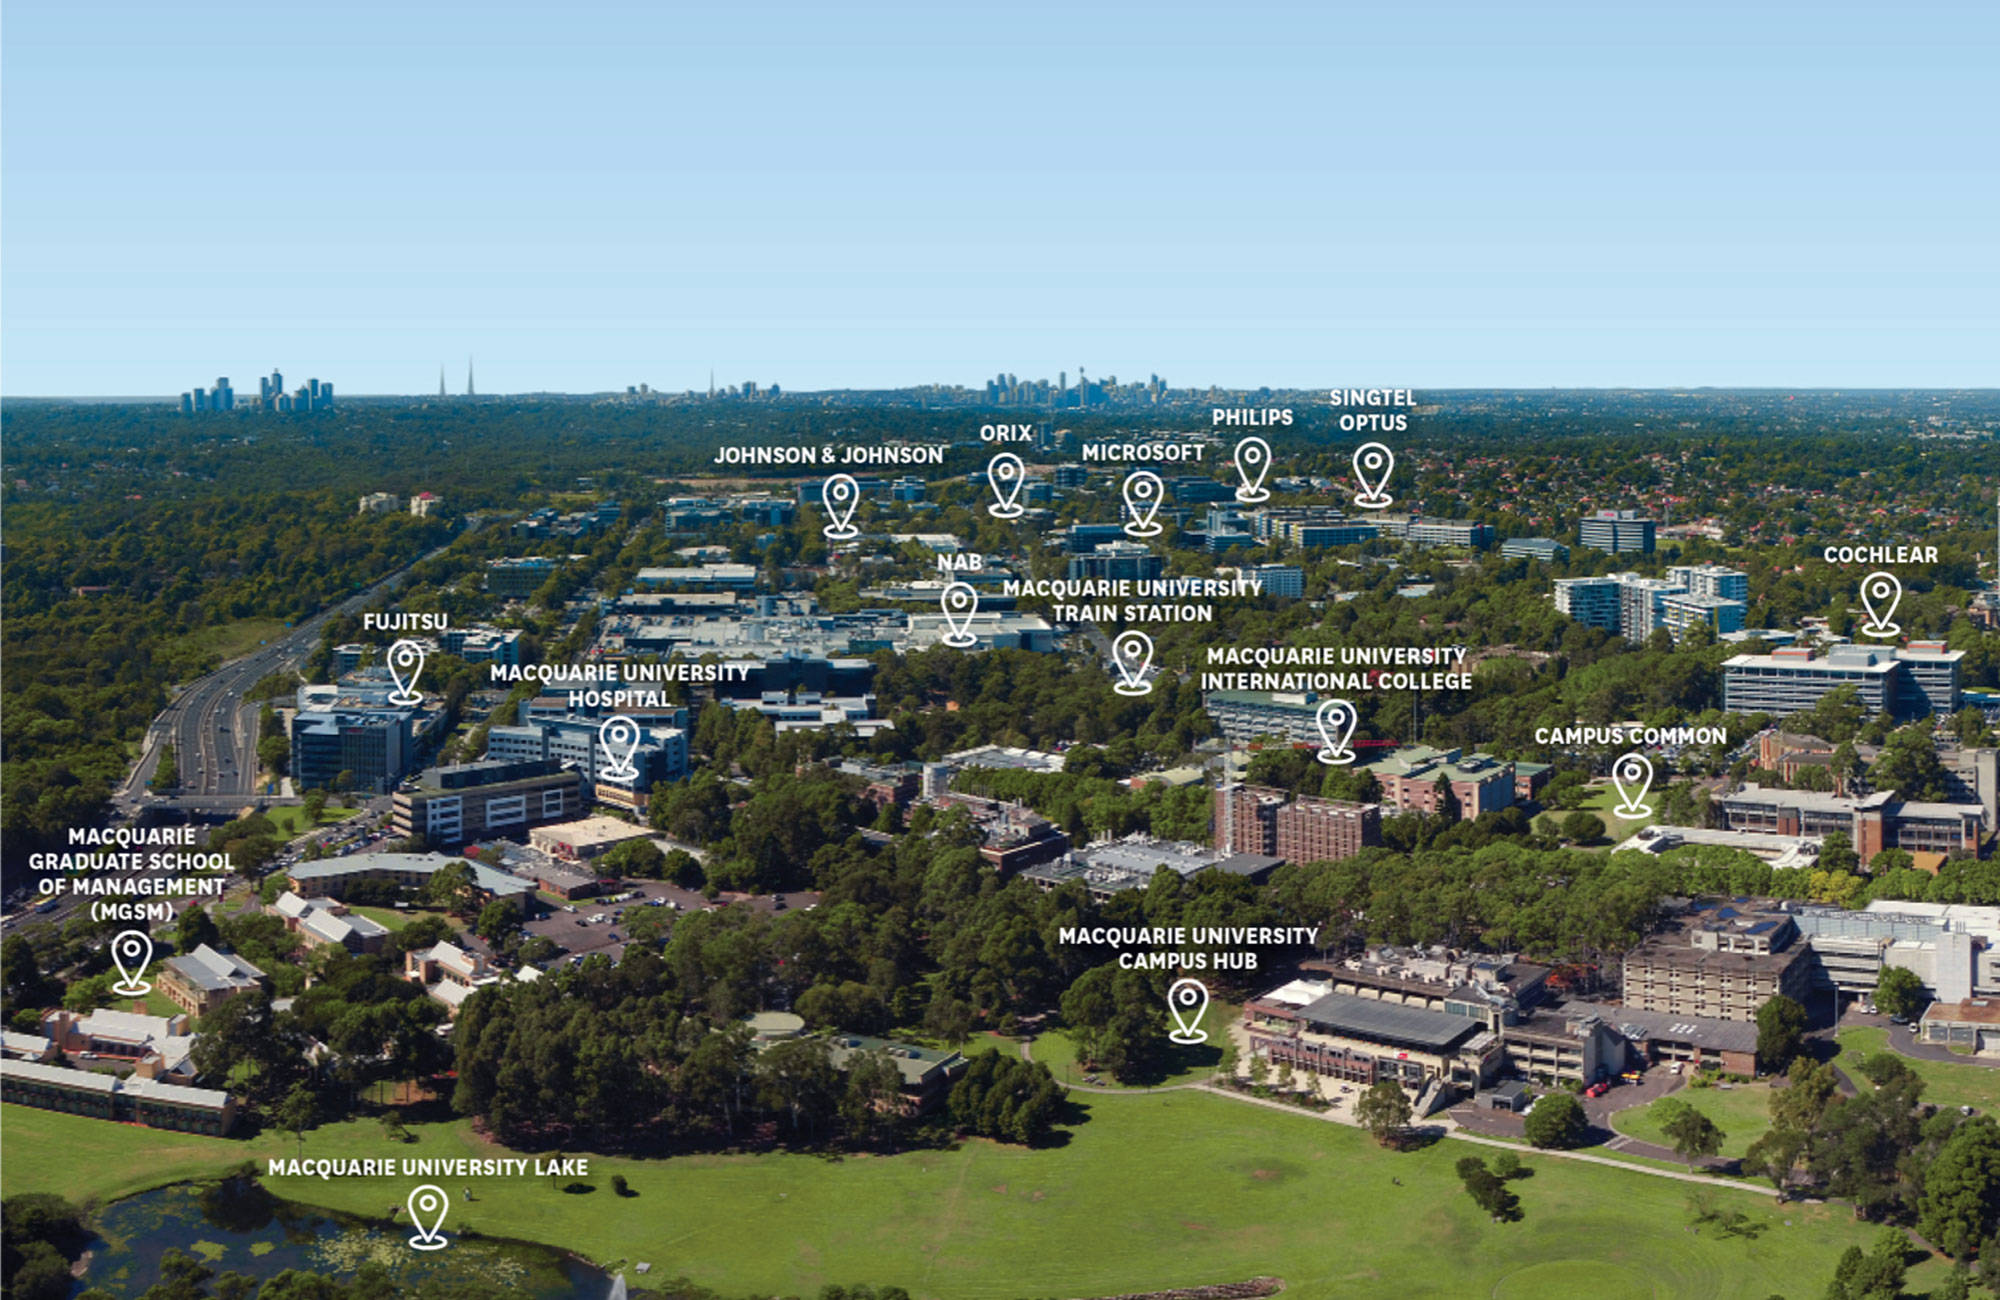 Macquarie University Campus Map